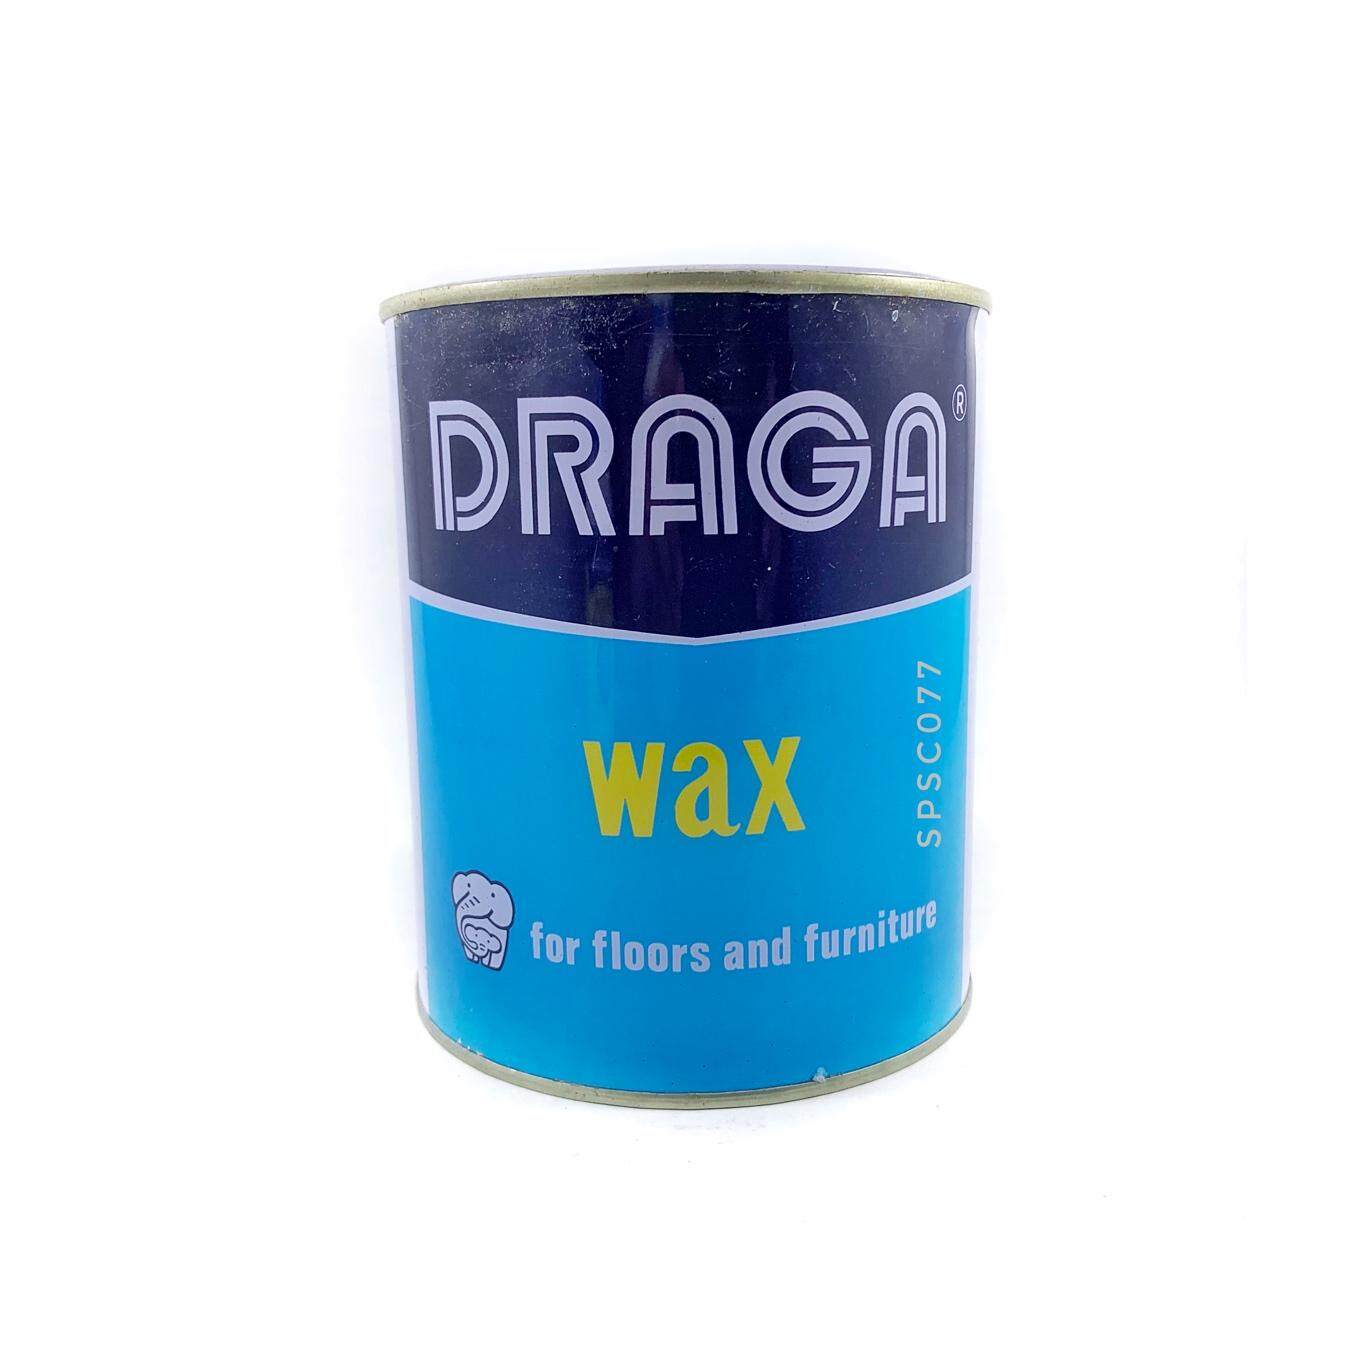 DRAGA WAX แว๊ก แว๊กขัดพื้น ขัดพื้นไม้ ให้เงางาม ขี้ผึ้งขัดพื้น Wax ขัดเฟอร์นิเจอร์ แว๊กซ์ขัดพื้นไม้ ขนาด 900 กรัม หรือ 2 ปอนด์